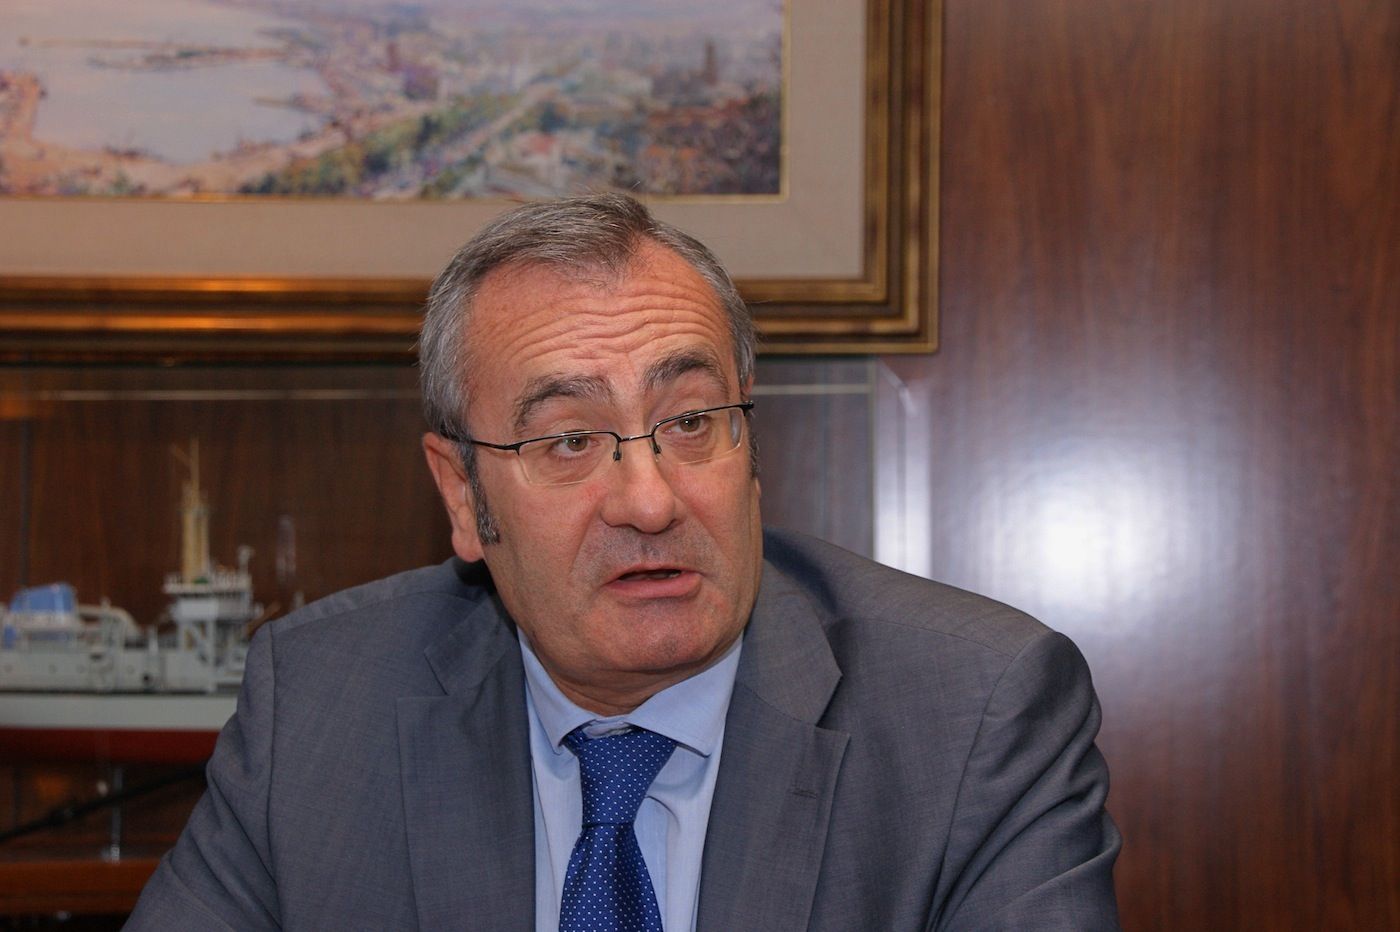 Jose Llorca, presidente de Puertos del Estado, durante la entrevista concedida en exclusiva a cadenadesuministro.es.